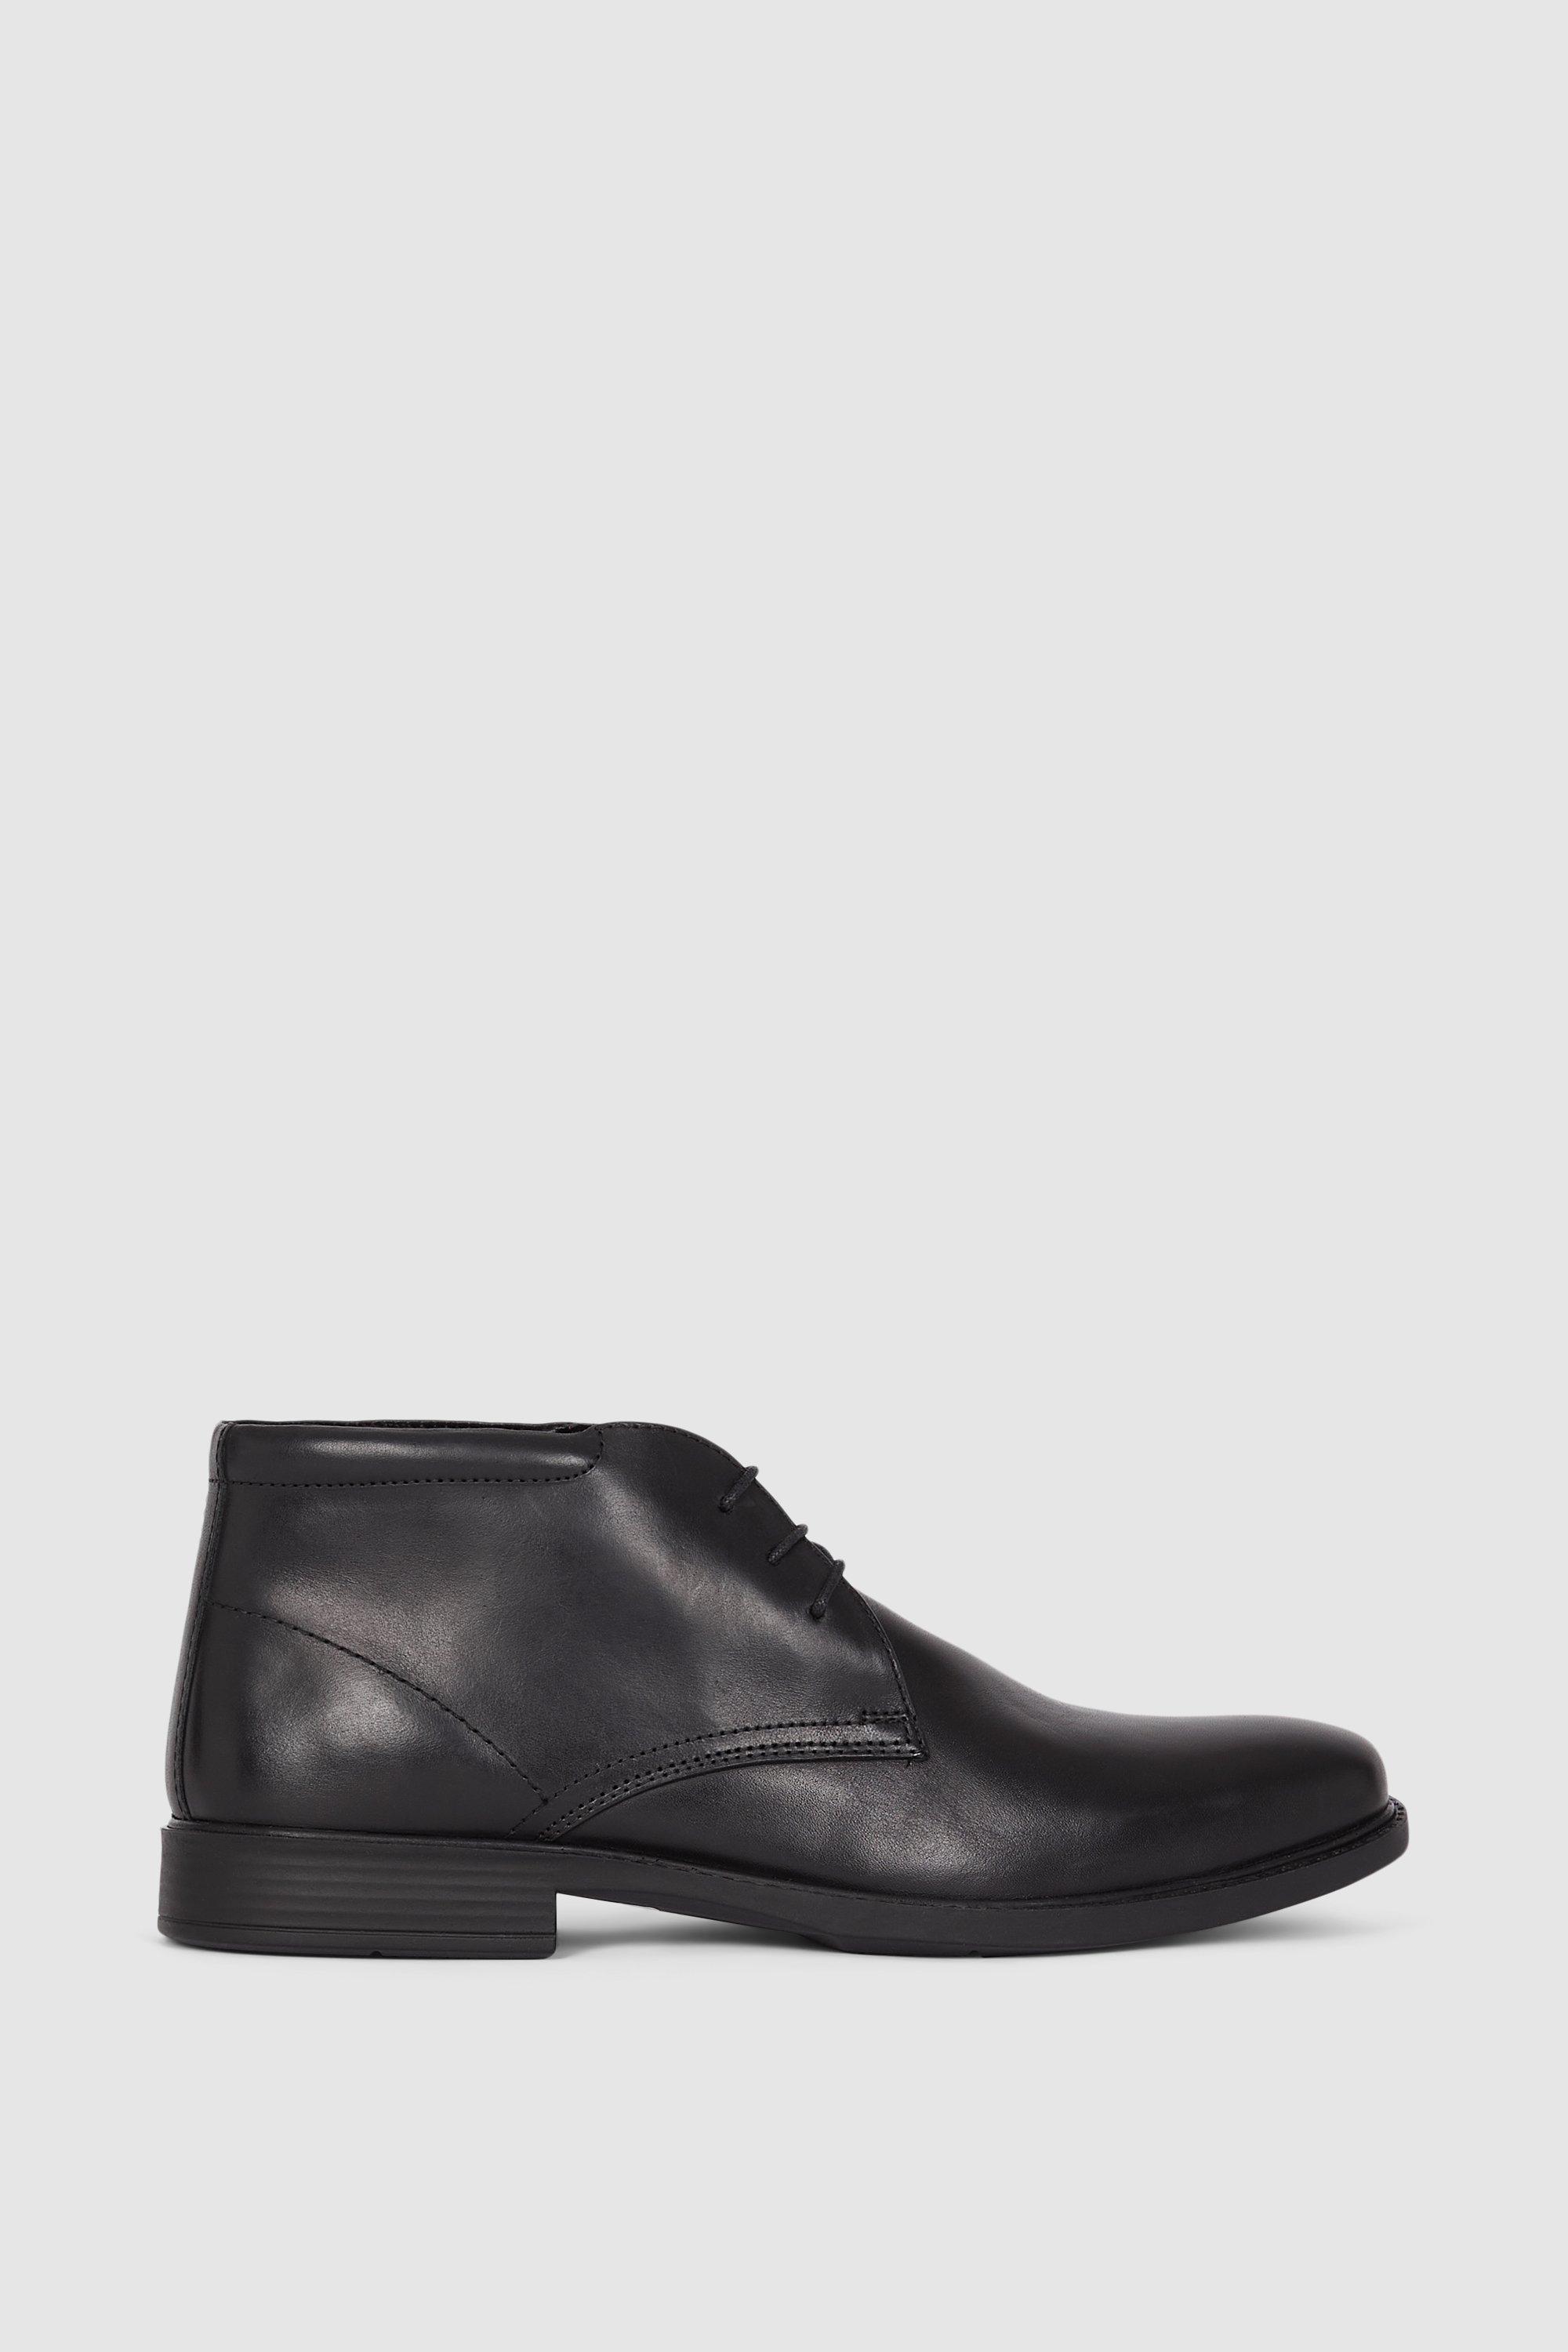 Boots | Halifax Leather Chukka Boot | Debenhams